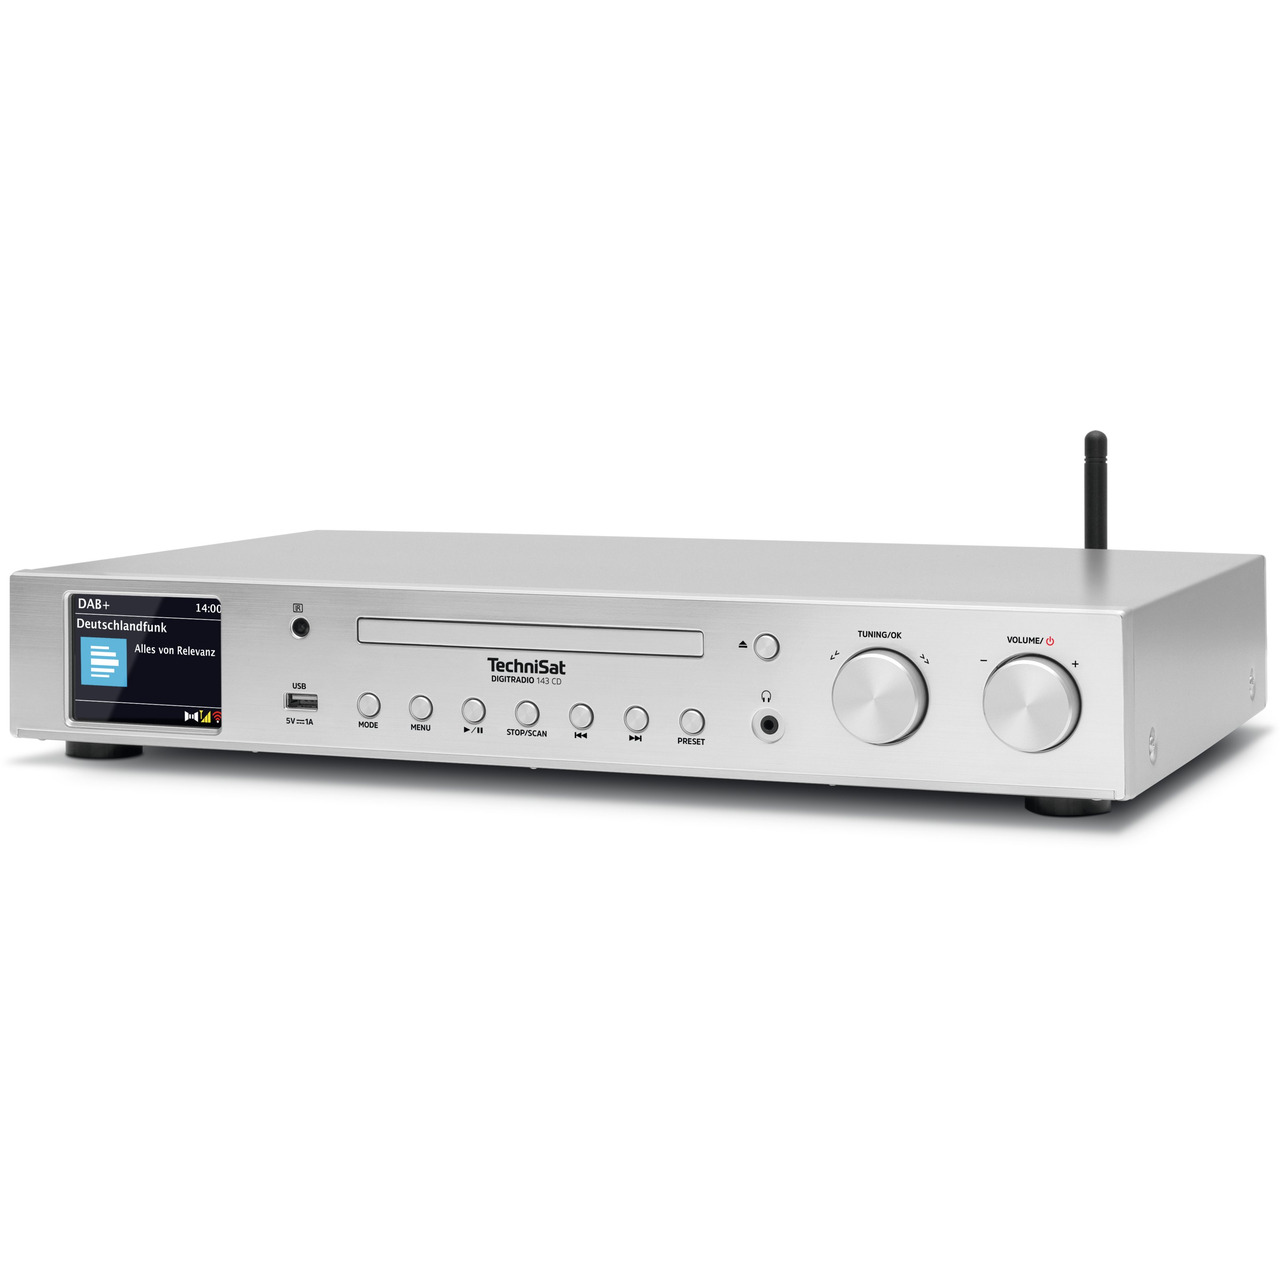 TechniSat Radio-Hi-Fi-Tuner DigitRadio 143 CD (V3)- DAB+-UKW-Internetradio- Bluetooth- CD- silber unter Multimedia